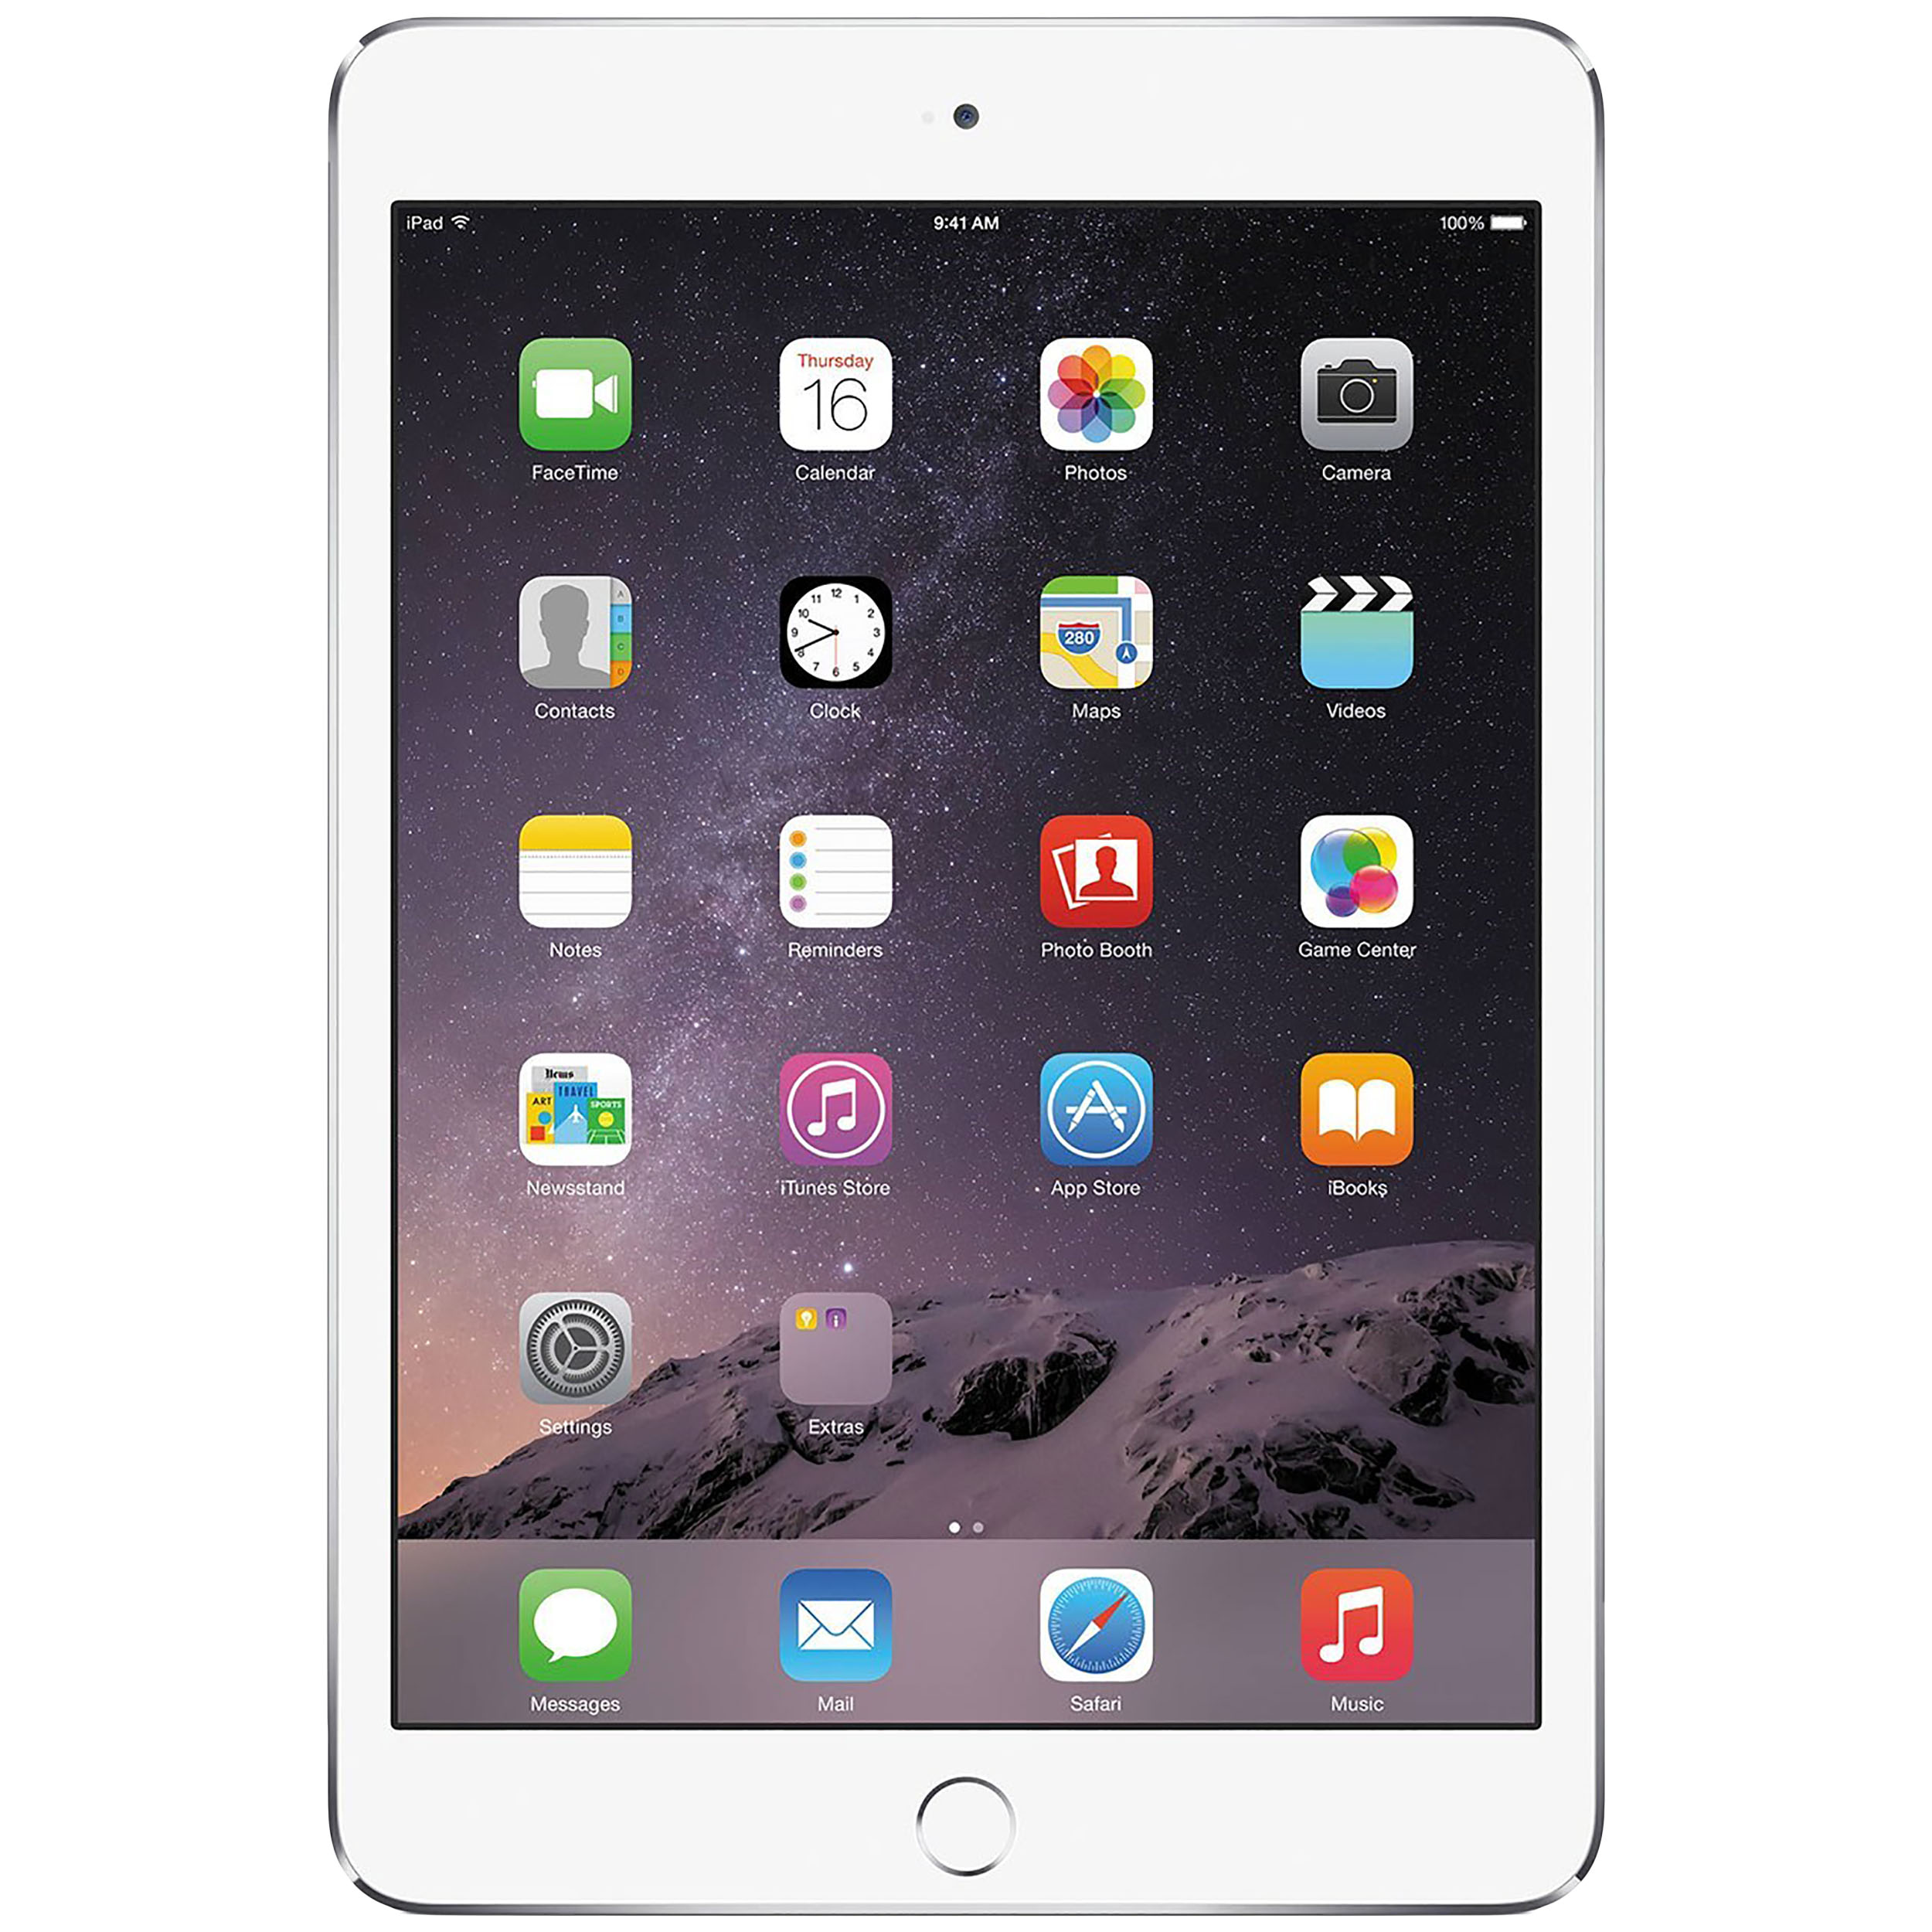 تبلت اپل مدل iPad mini 3 4G ظرفیت 16 گیگابایت